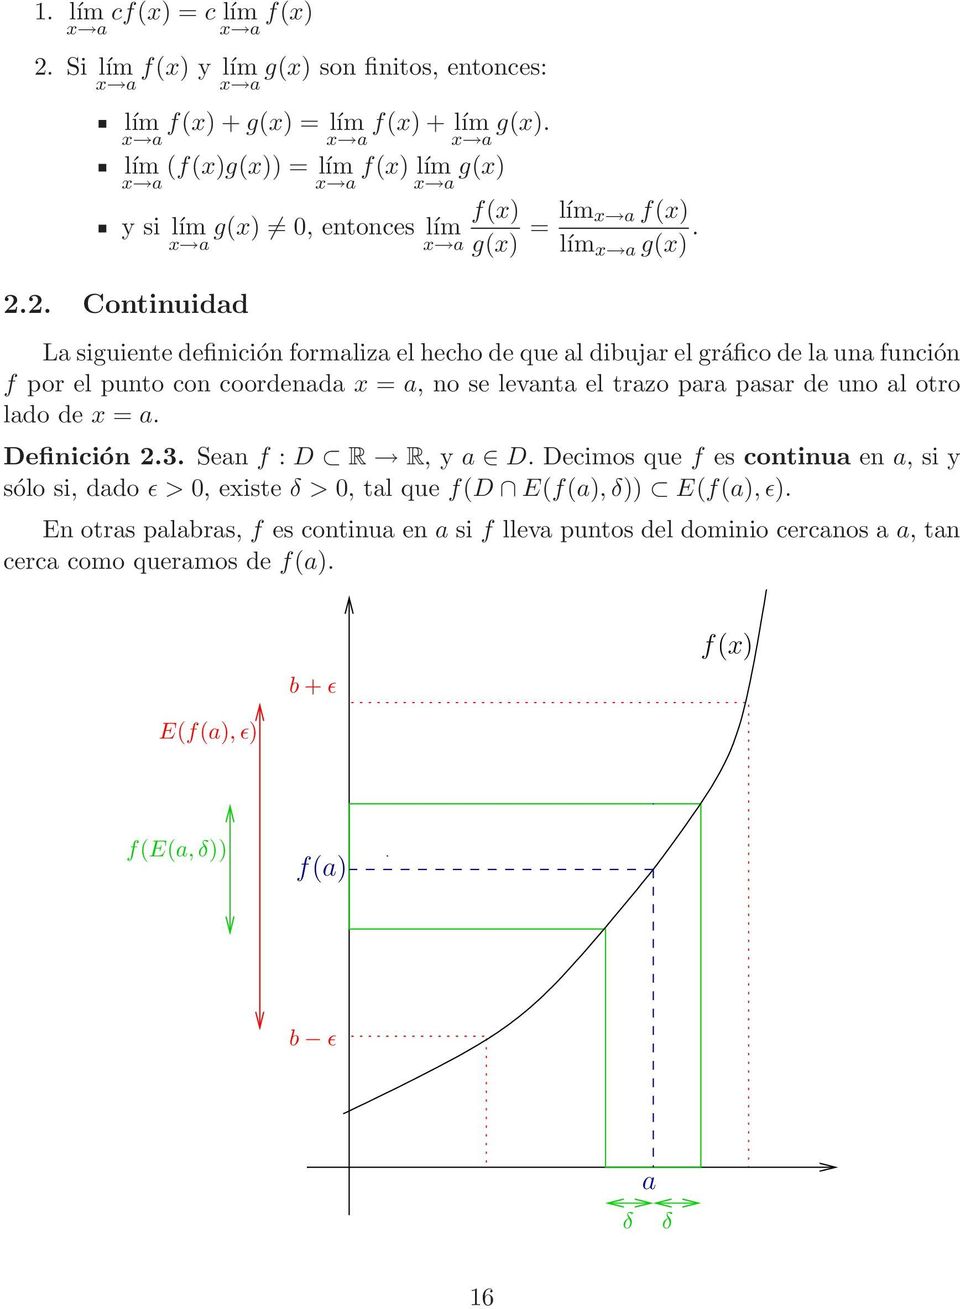 2. Continuidd L siguiente definición formliz el hecho de que l dibujr el gráfico de l un función f por el punto con coordend x =, no se levnt el trzo pr psr de uno l